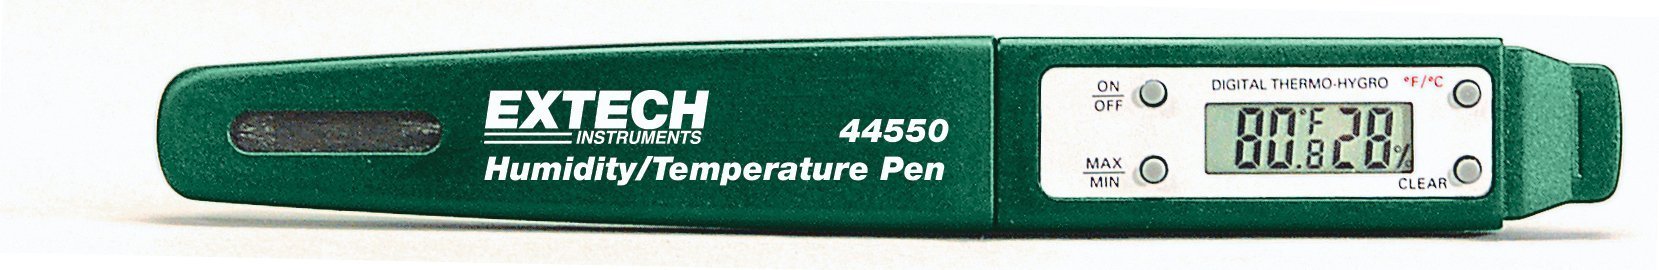 Extech Kompakter Feuchte/Temperatur-Stift, 1 Stück, 44550